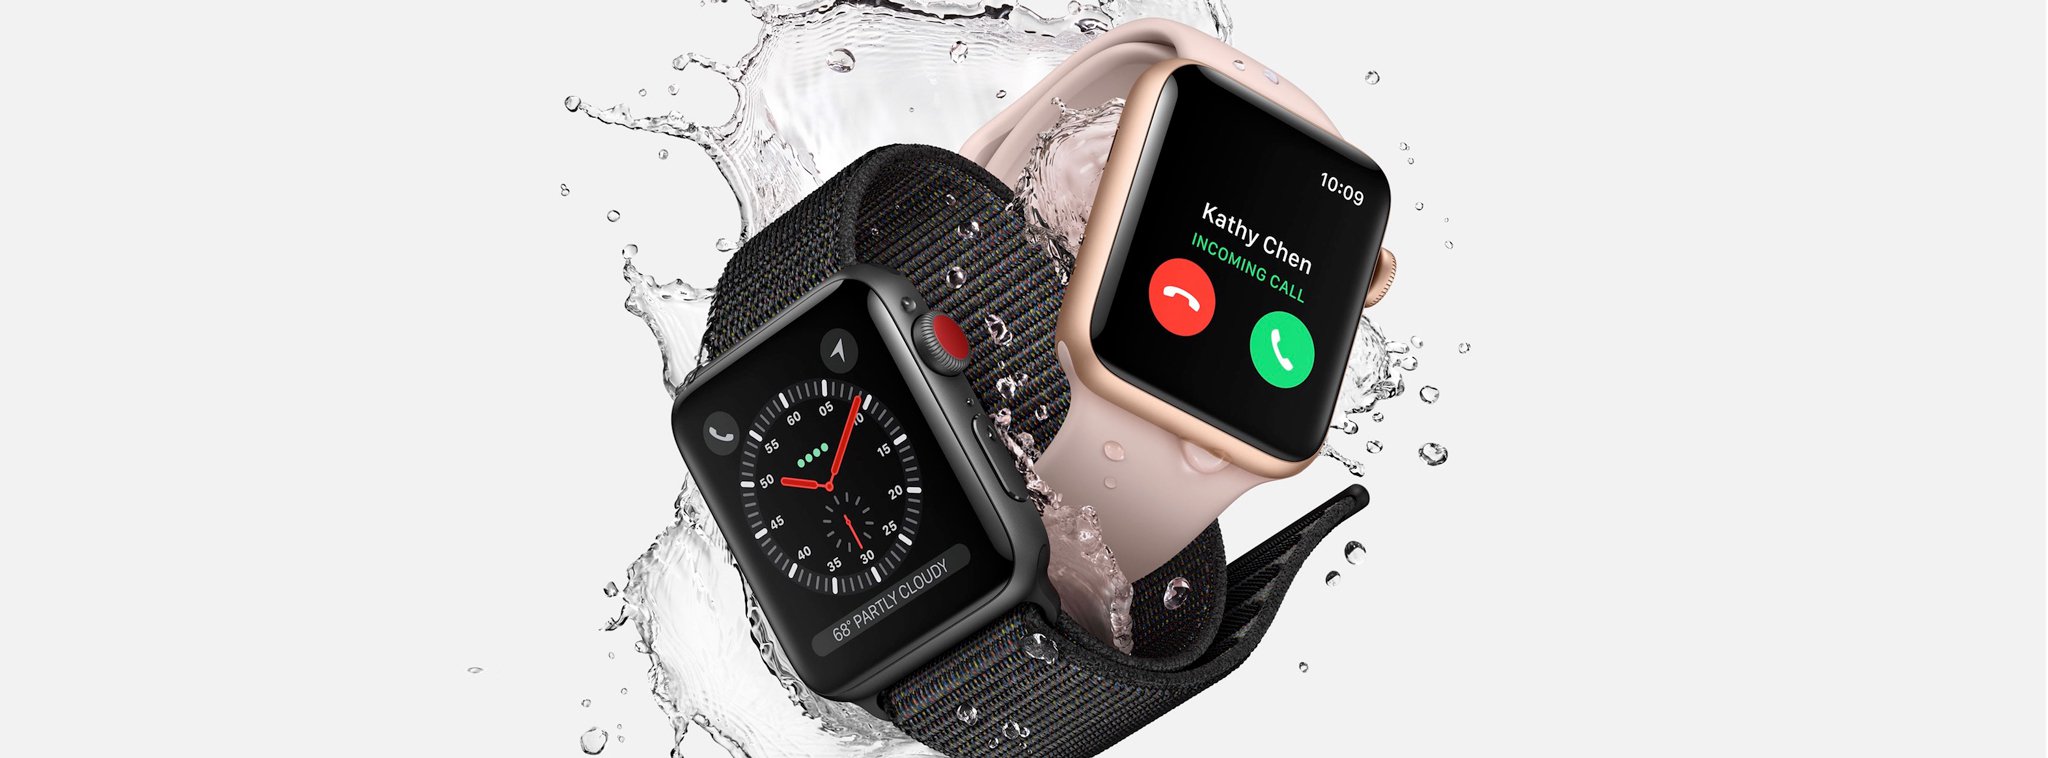 Apple Watch Series 3: Hỗ trợ LTE, chip W2, vi xử lý lõi kép mạnh hơn 70%,